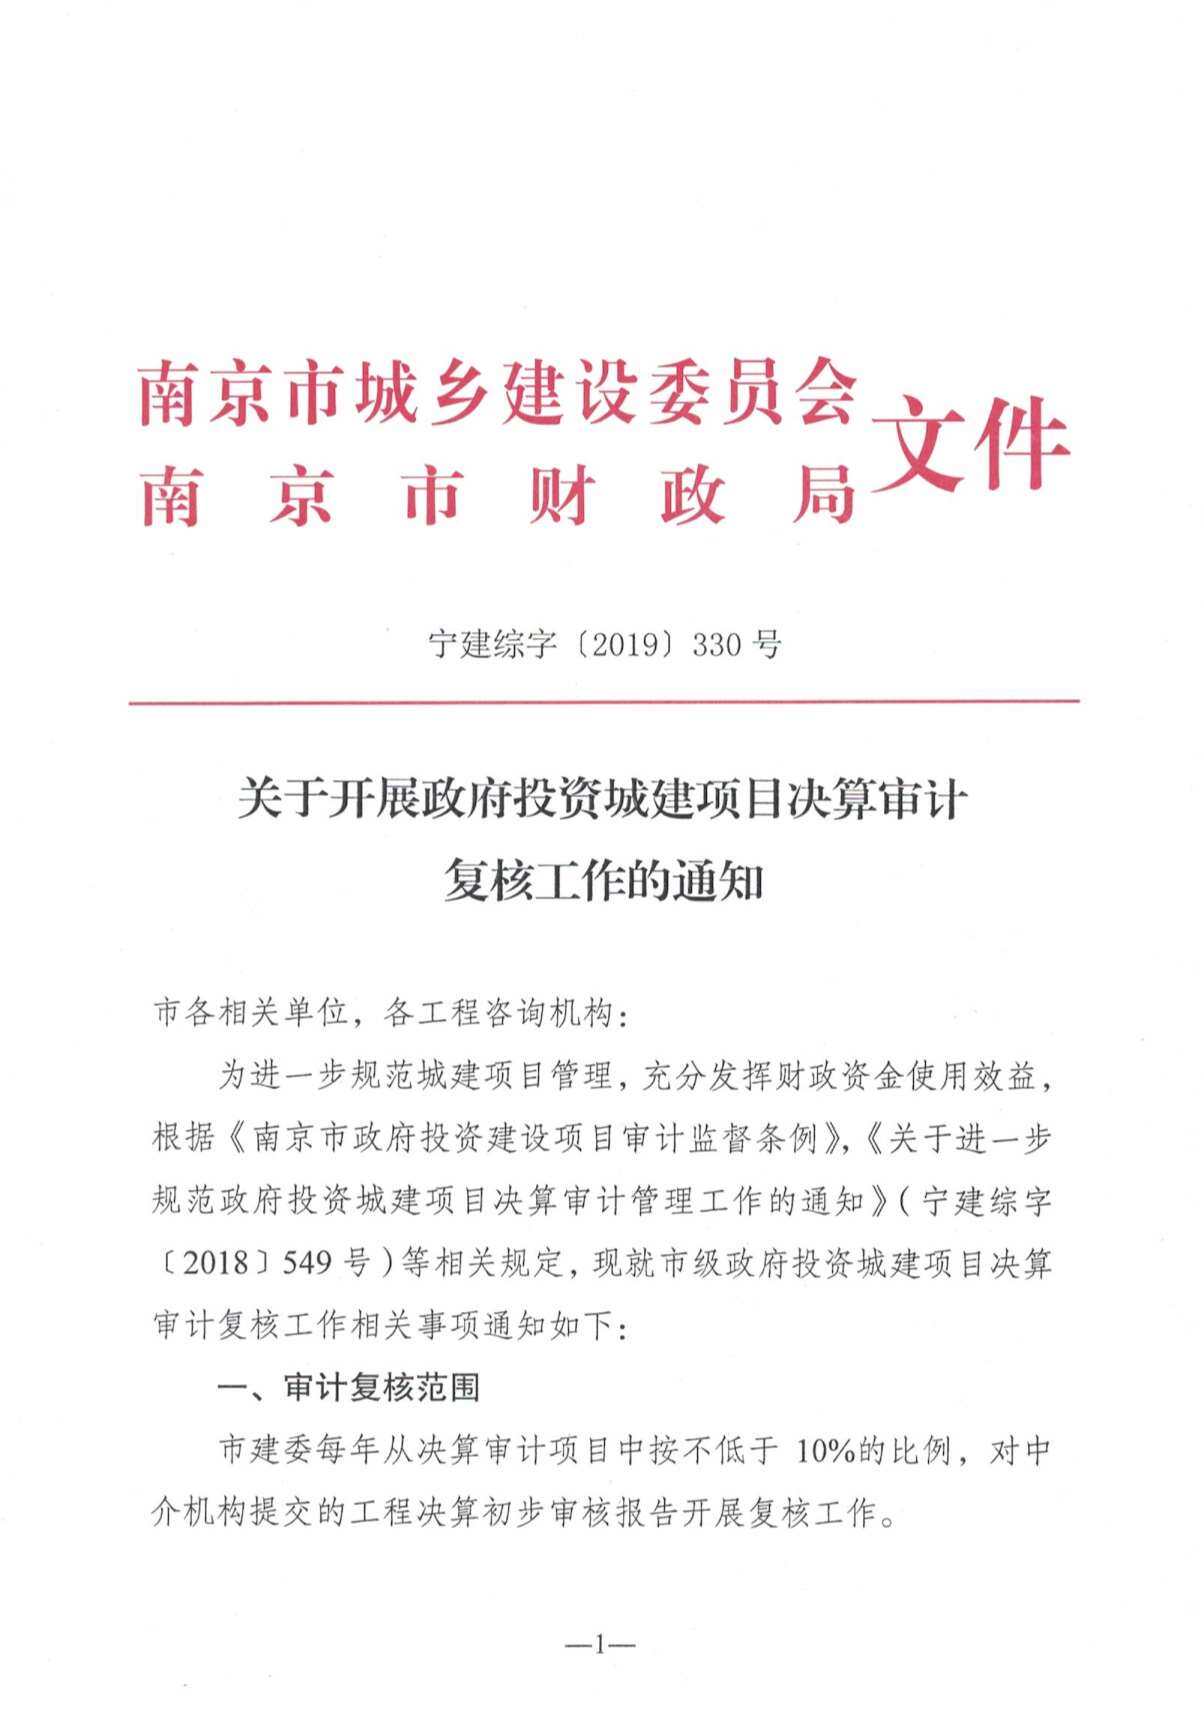 南京关于开展政府投资城建项目决算审计复核工作的通知宁建综字[2019]330号